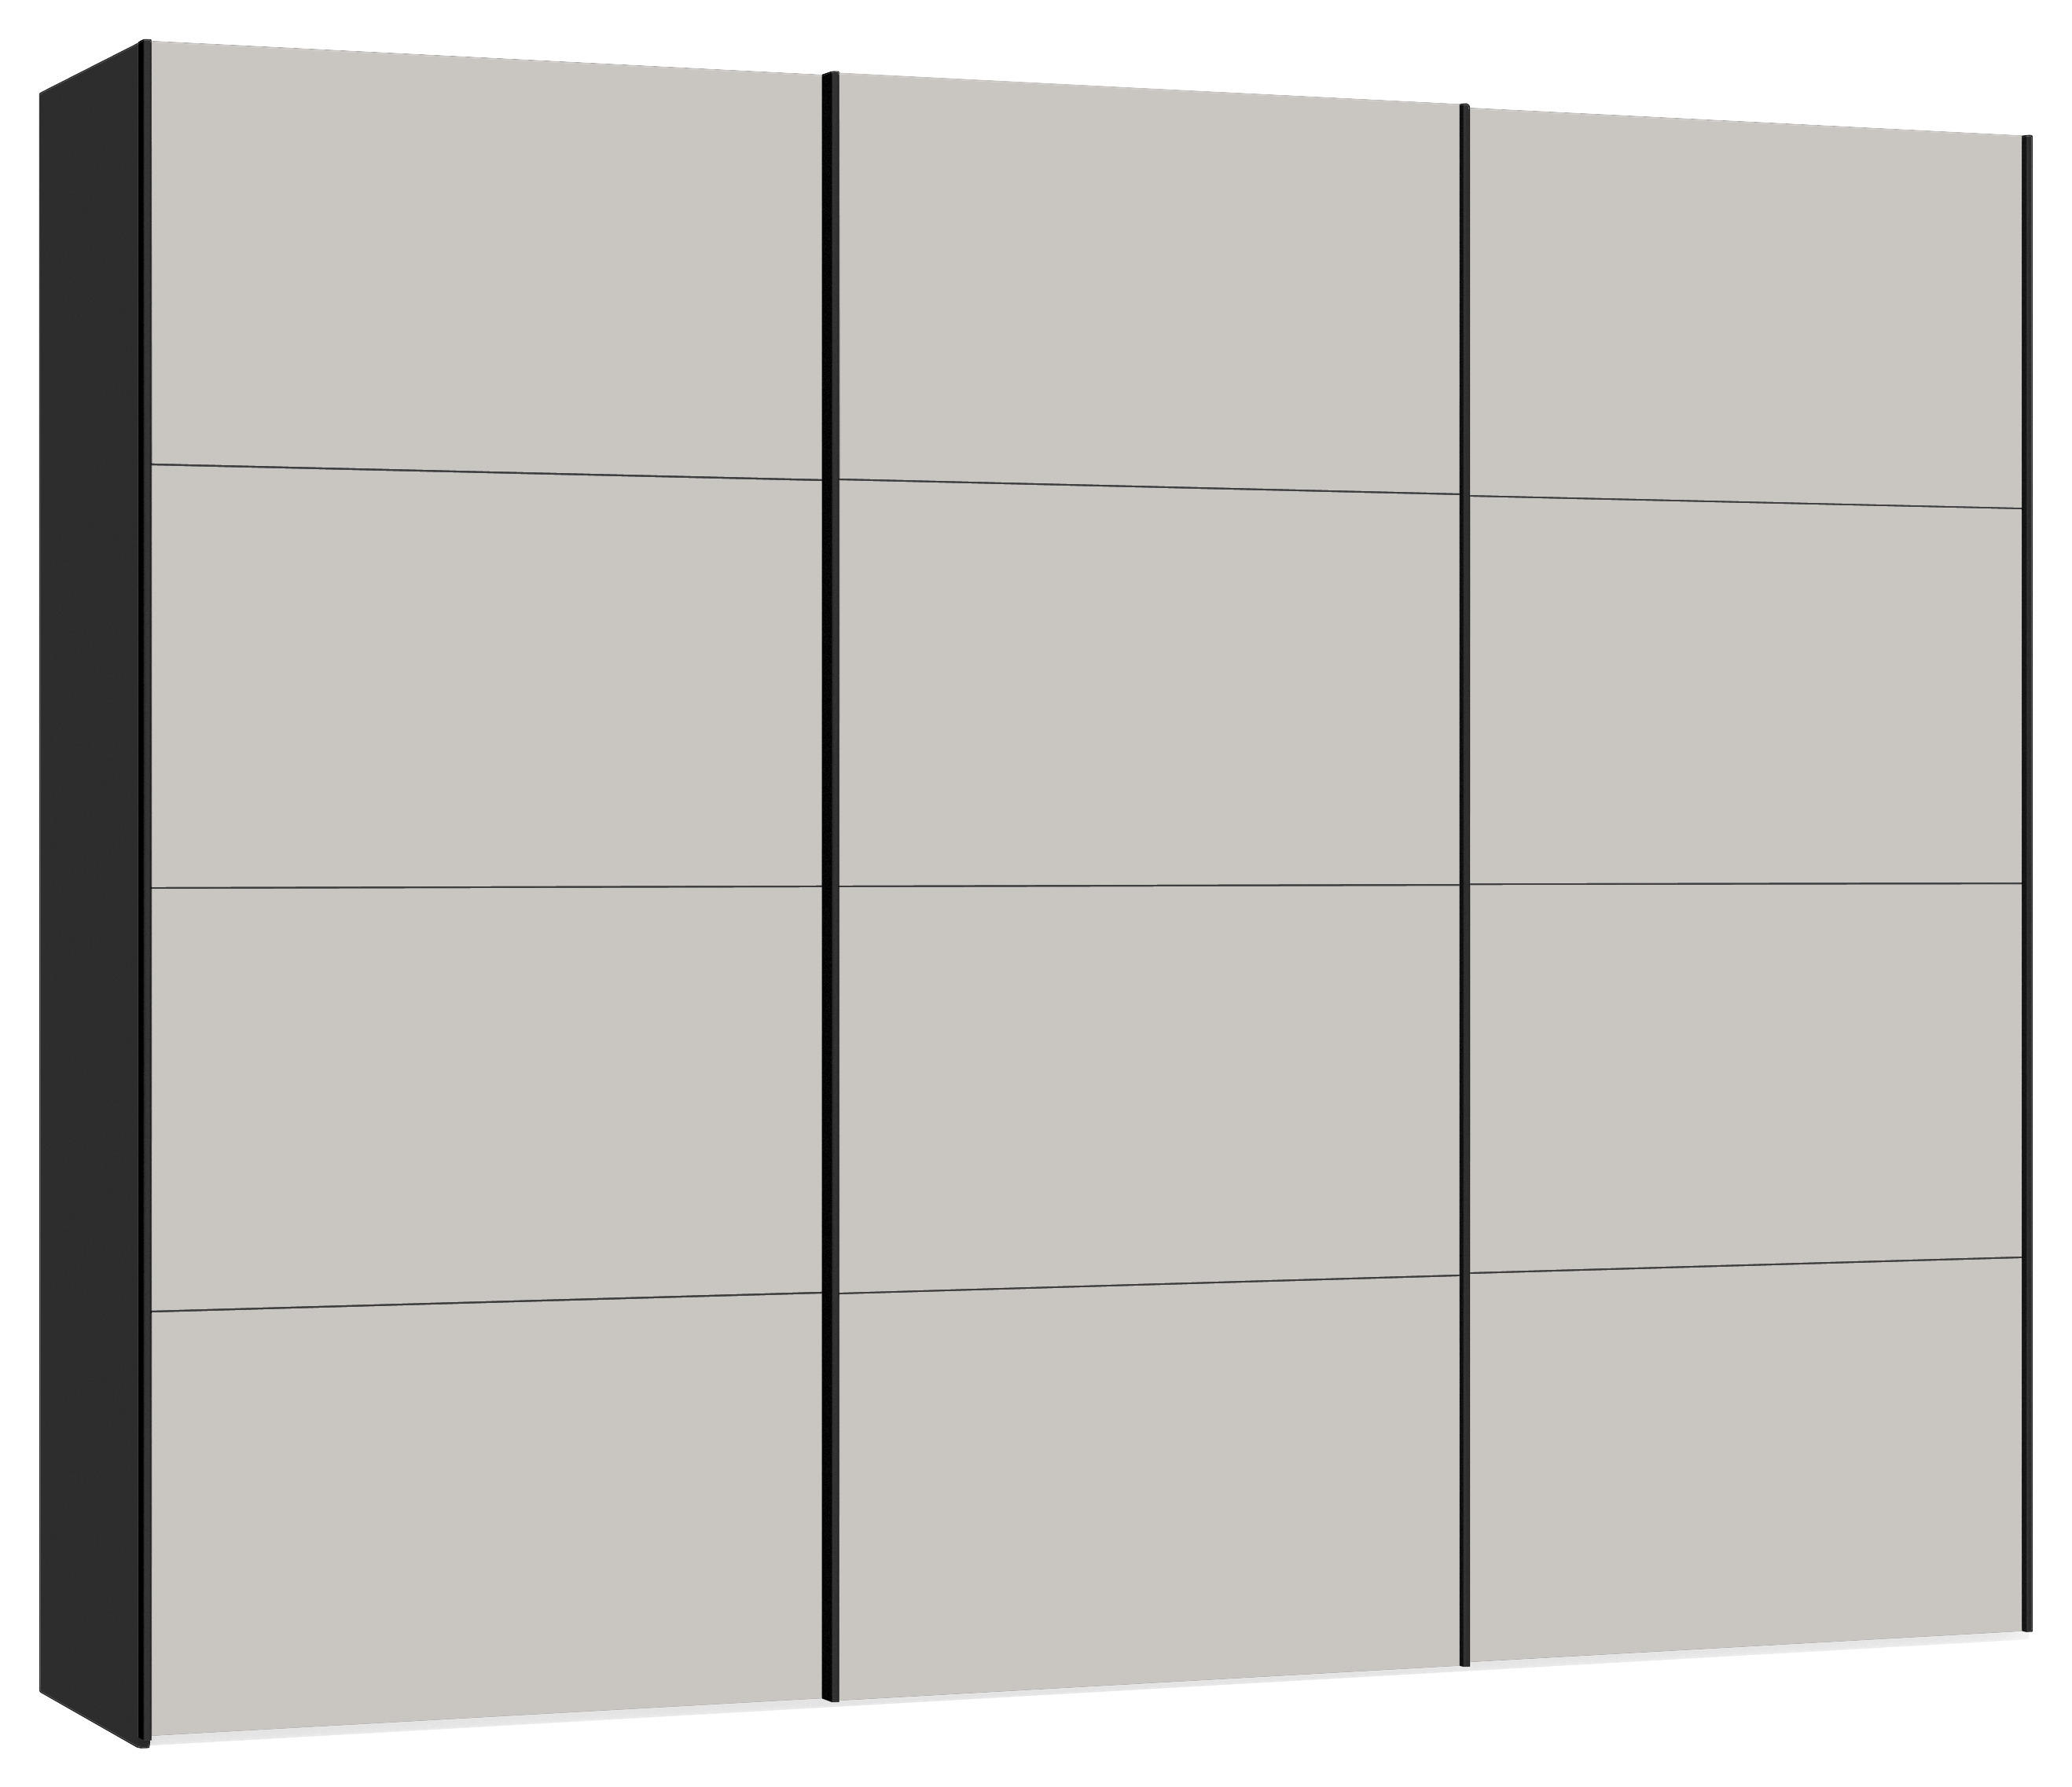 SCHWEBETÜRENSCHRANK 3-türig Grau, Schwarz  - Schwarz/Grau, Design, Holzwerkstoff (303/220/65cm) - SetOne by Musterring